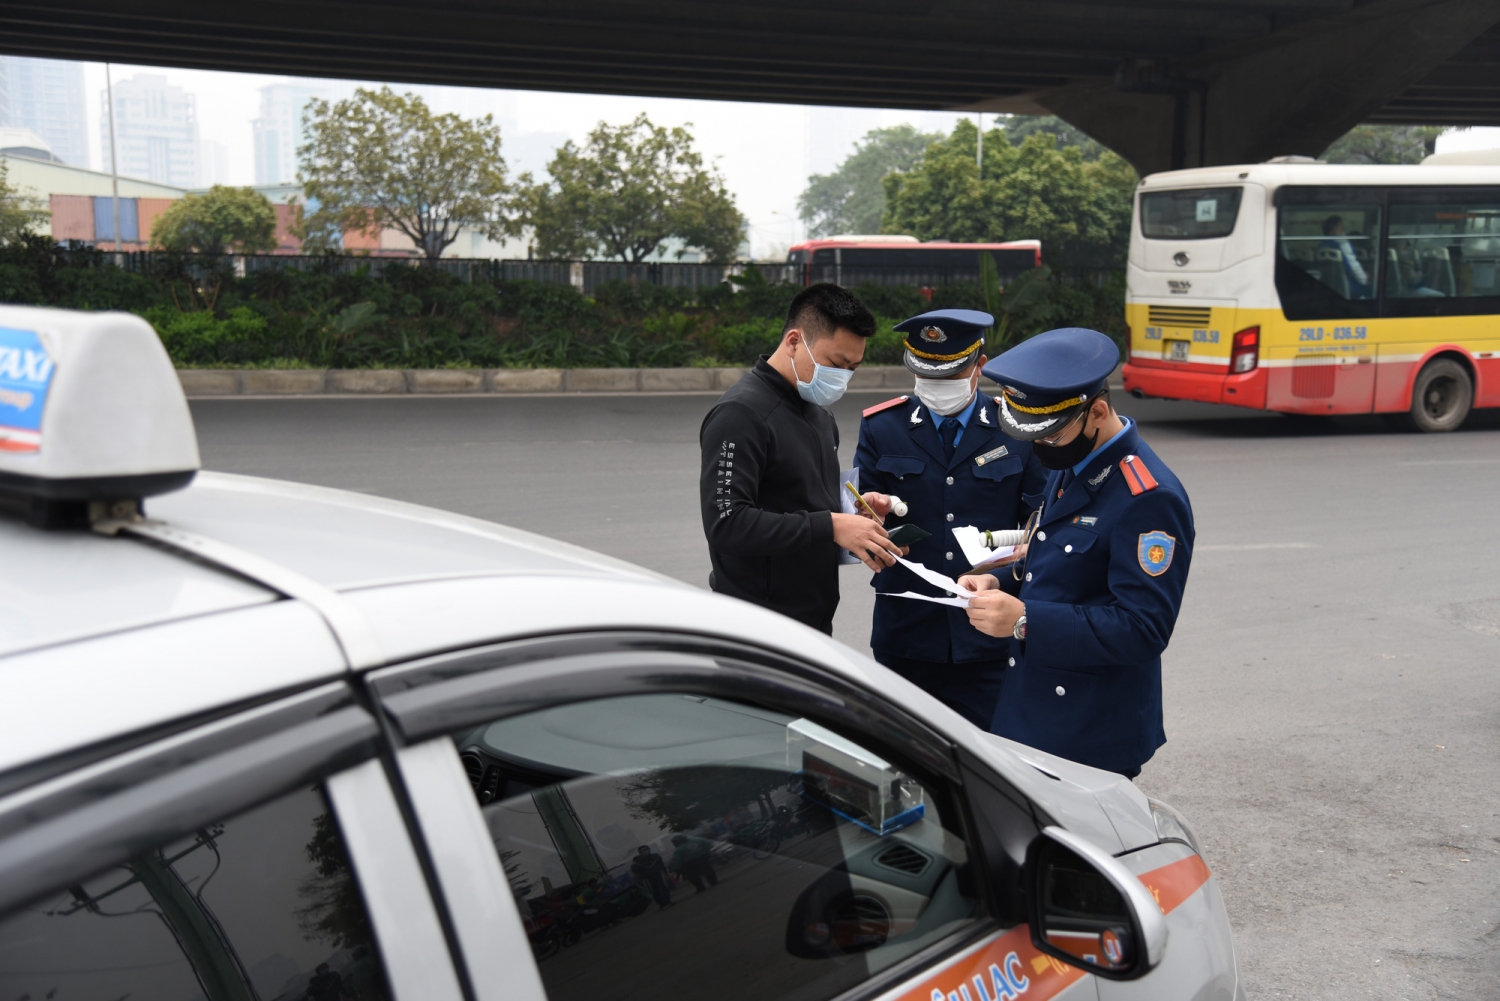 Hà Nội: Trong 1 tháng, thanh tra giao thông xử phạt hàng trăm xe taxi